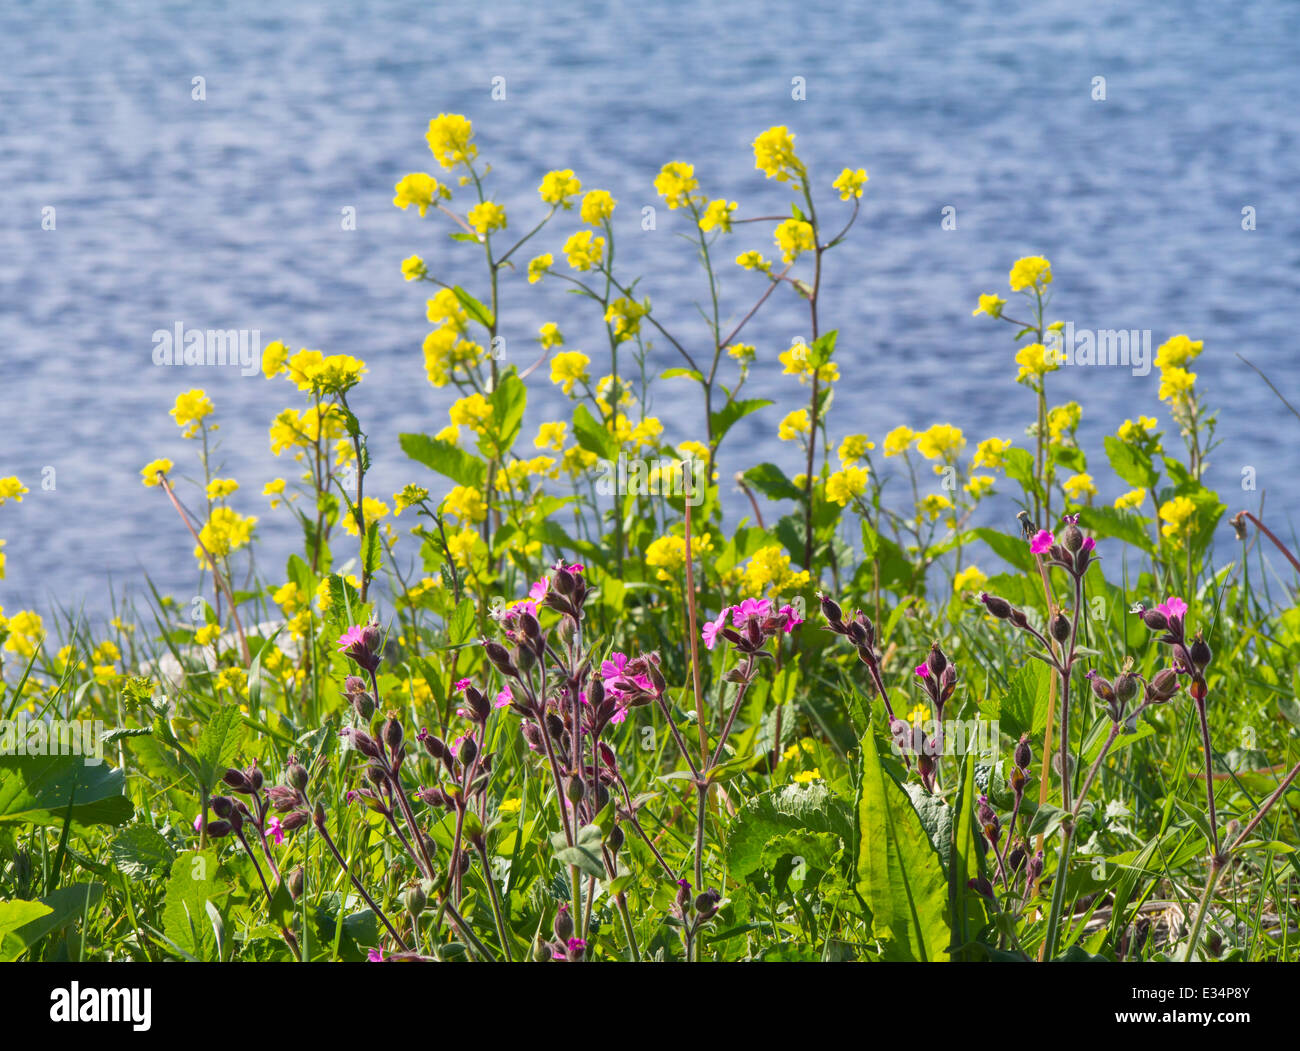 Das blaue Meer bilden die Kulisse für gelbe Feld Senf, Sinapis Arvensis und rote Campion, Silene Dioica. Stockfoto